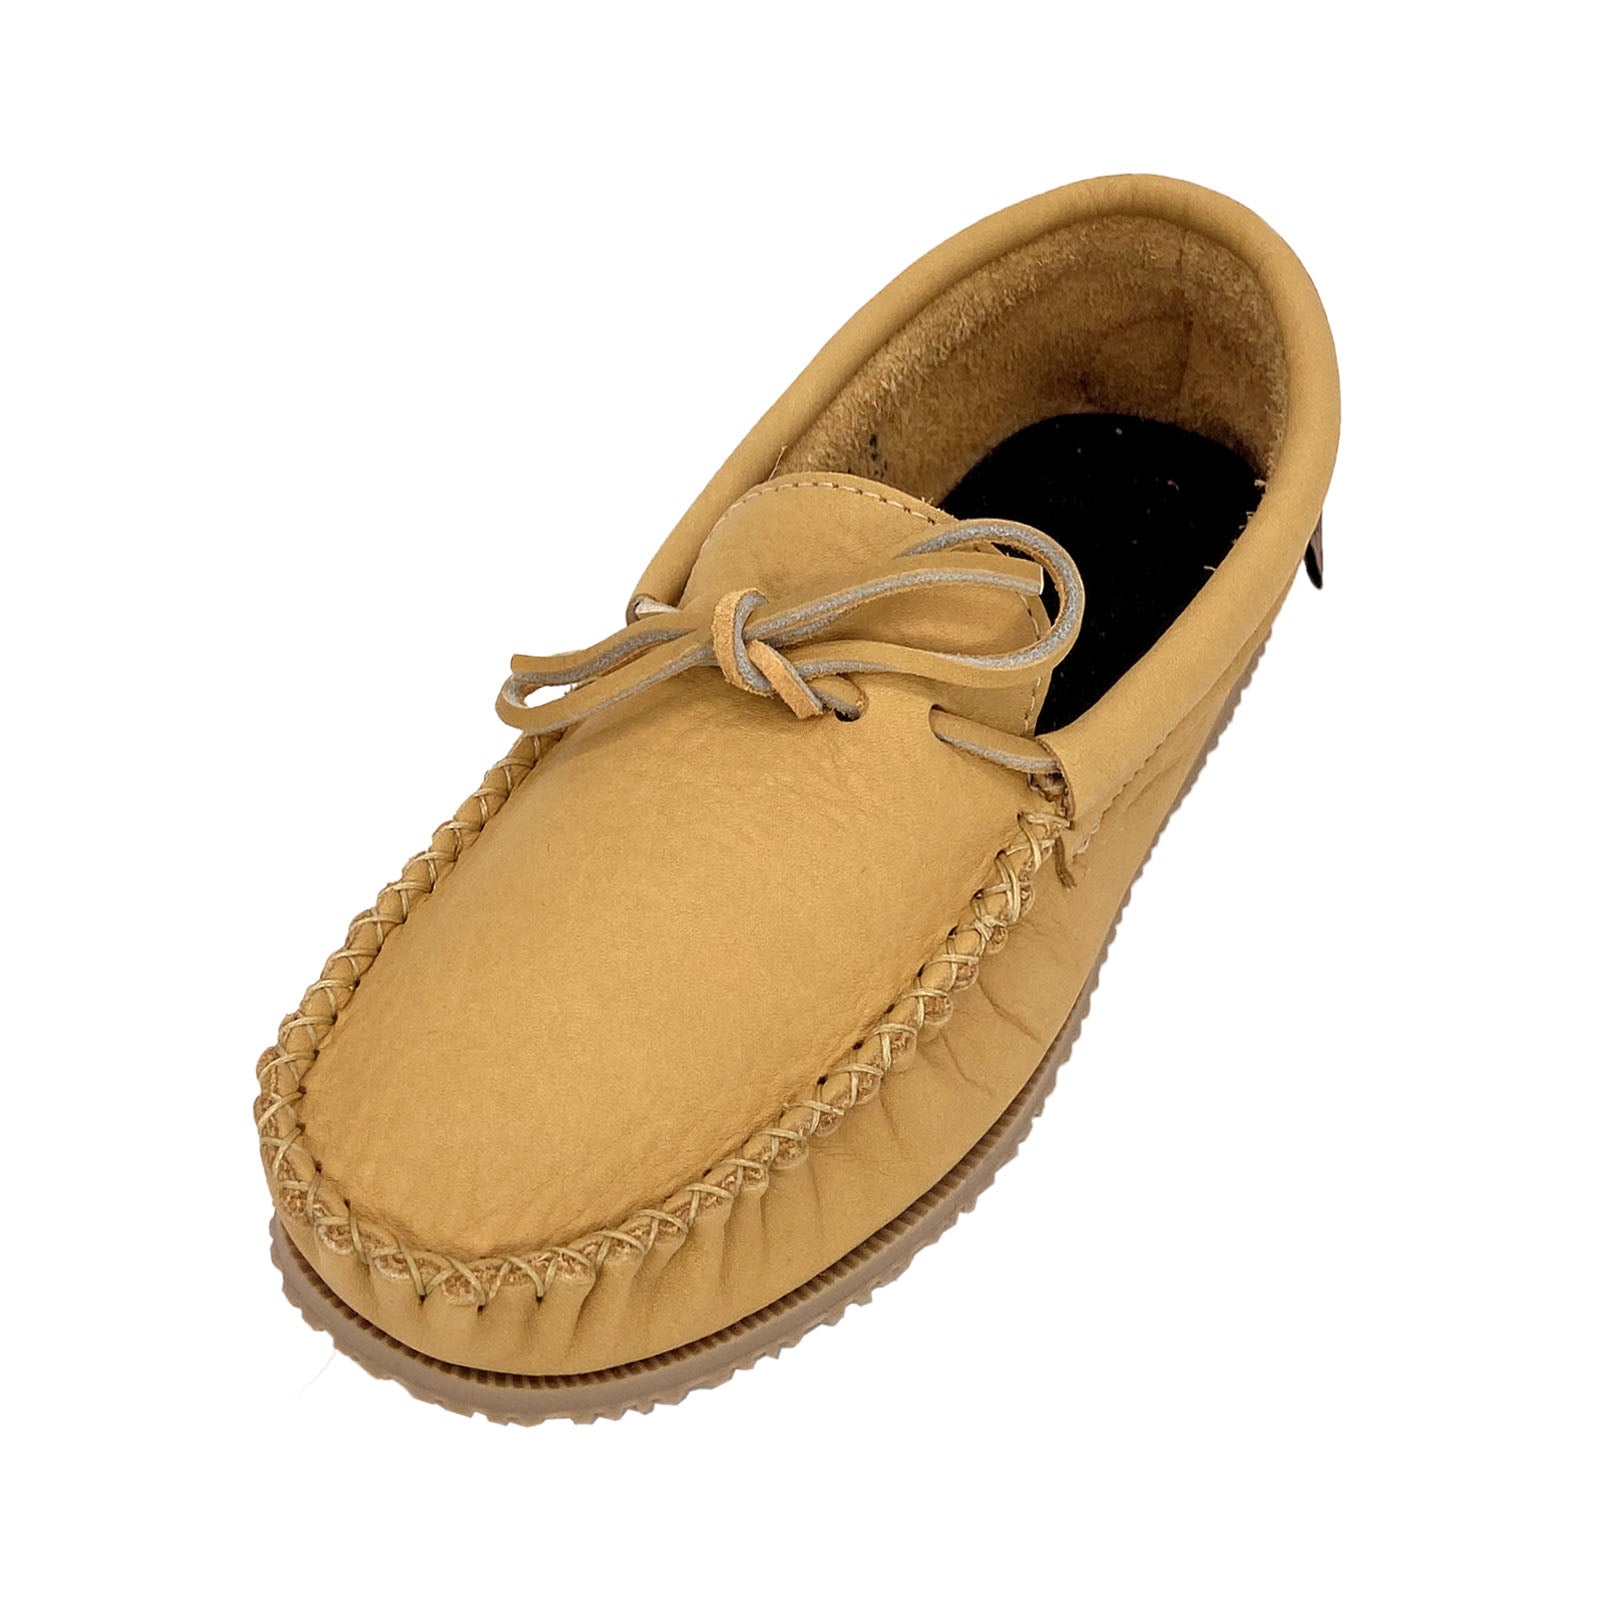 voor de hand liggend buurman teksten Men's Genuine Moose Hide Leather Cream Colored Loafer Moccasin Shoes –  Leather-Moccasins